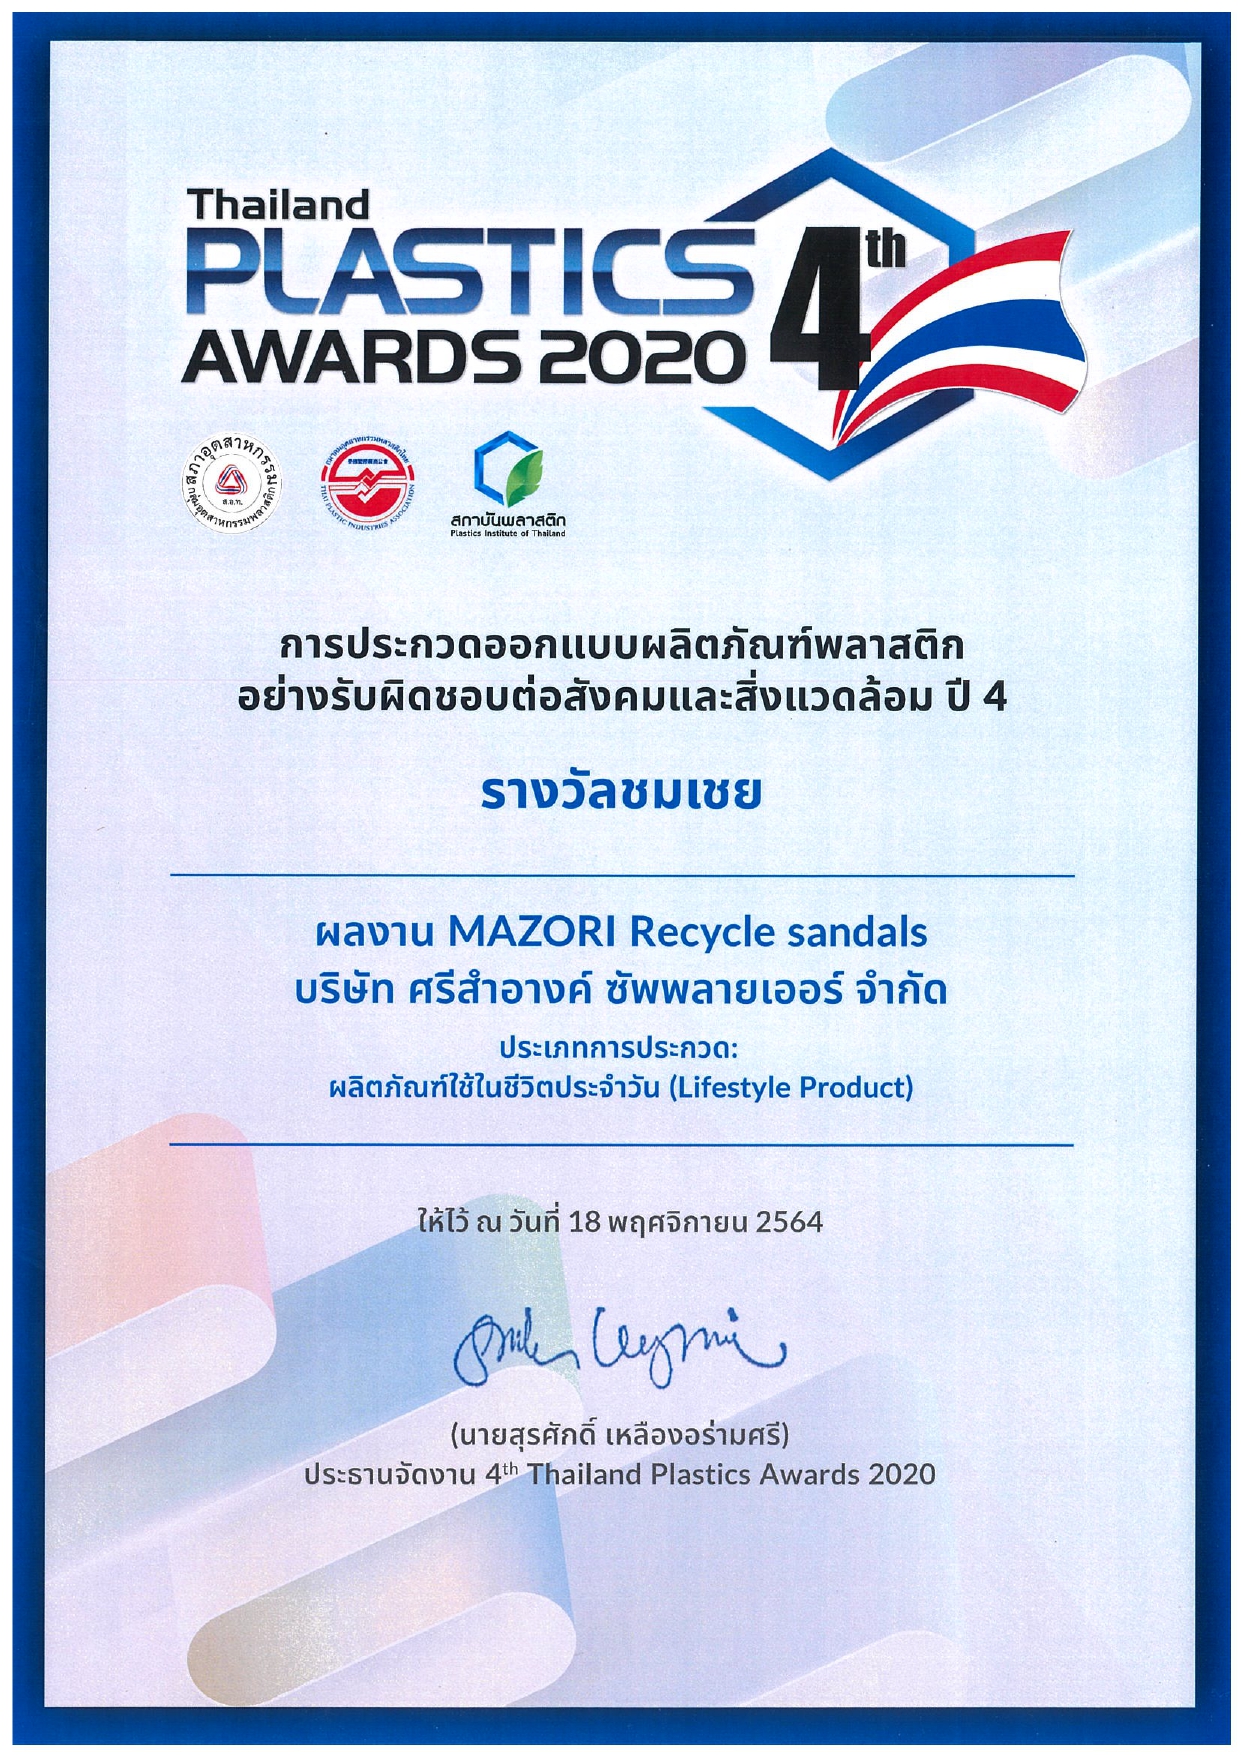 โครงการ 4th Thailand Plastics Awards 2020 ได้รับรางวัลชมเชย